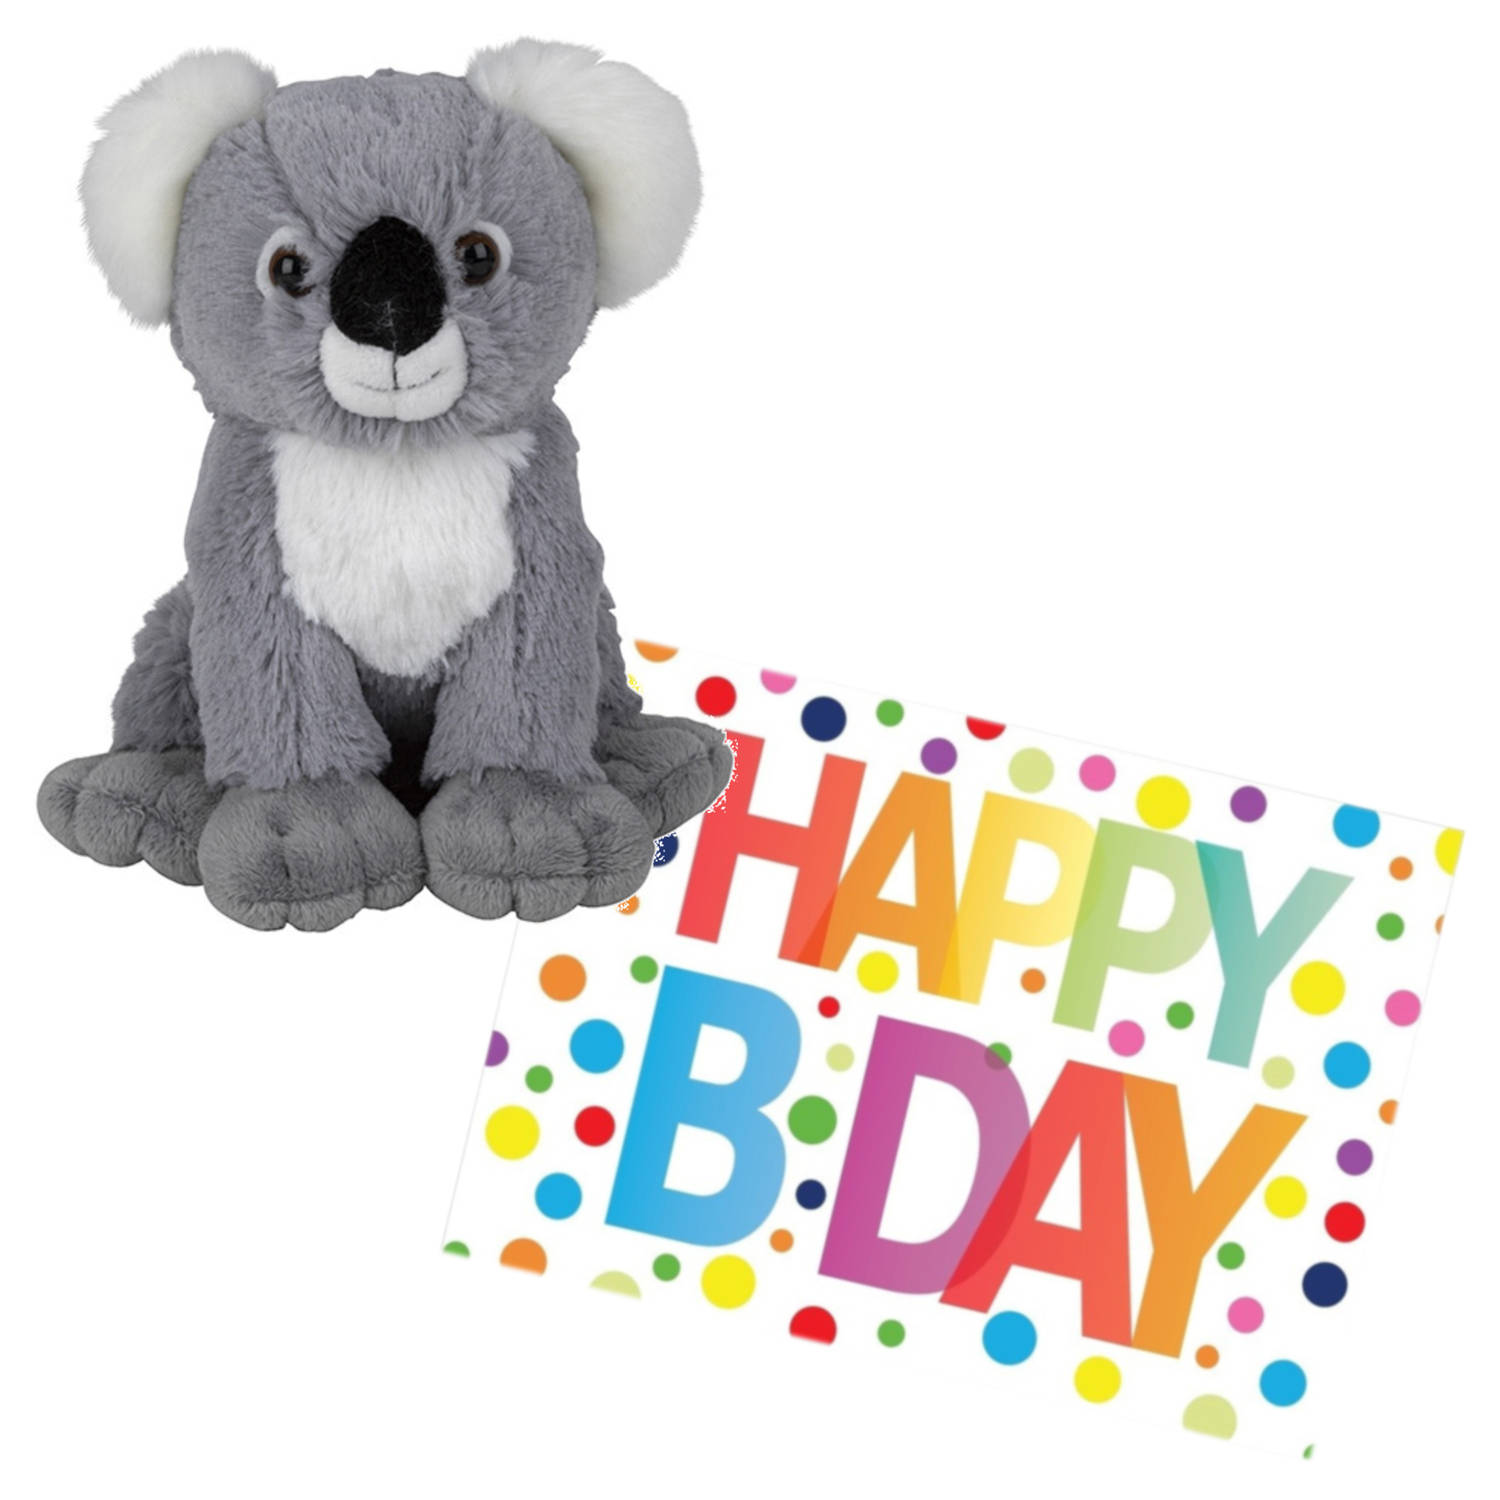 Pluche knuffel koala beer 19 cm met A5-size Happy Birthday wenskaart Knuffeldier